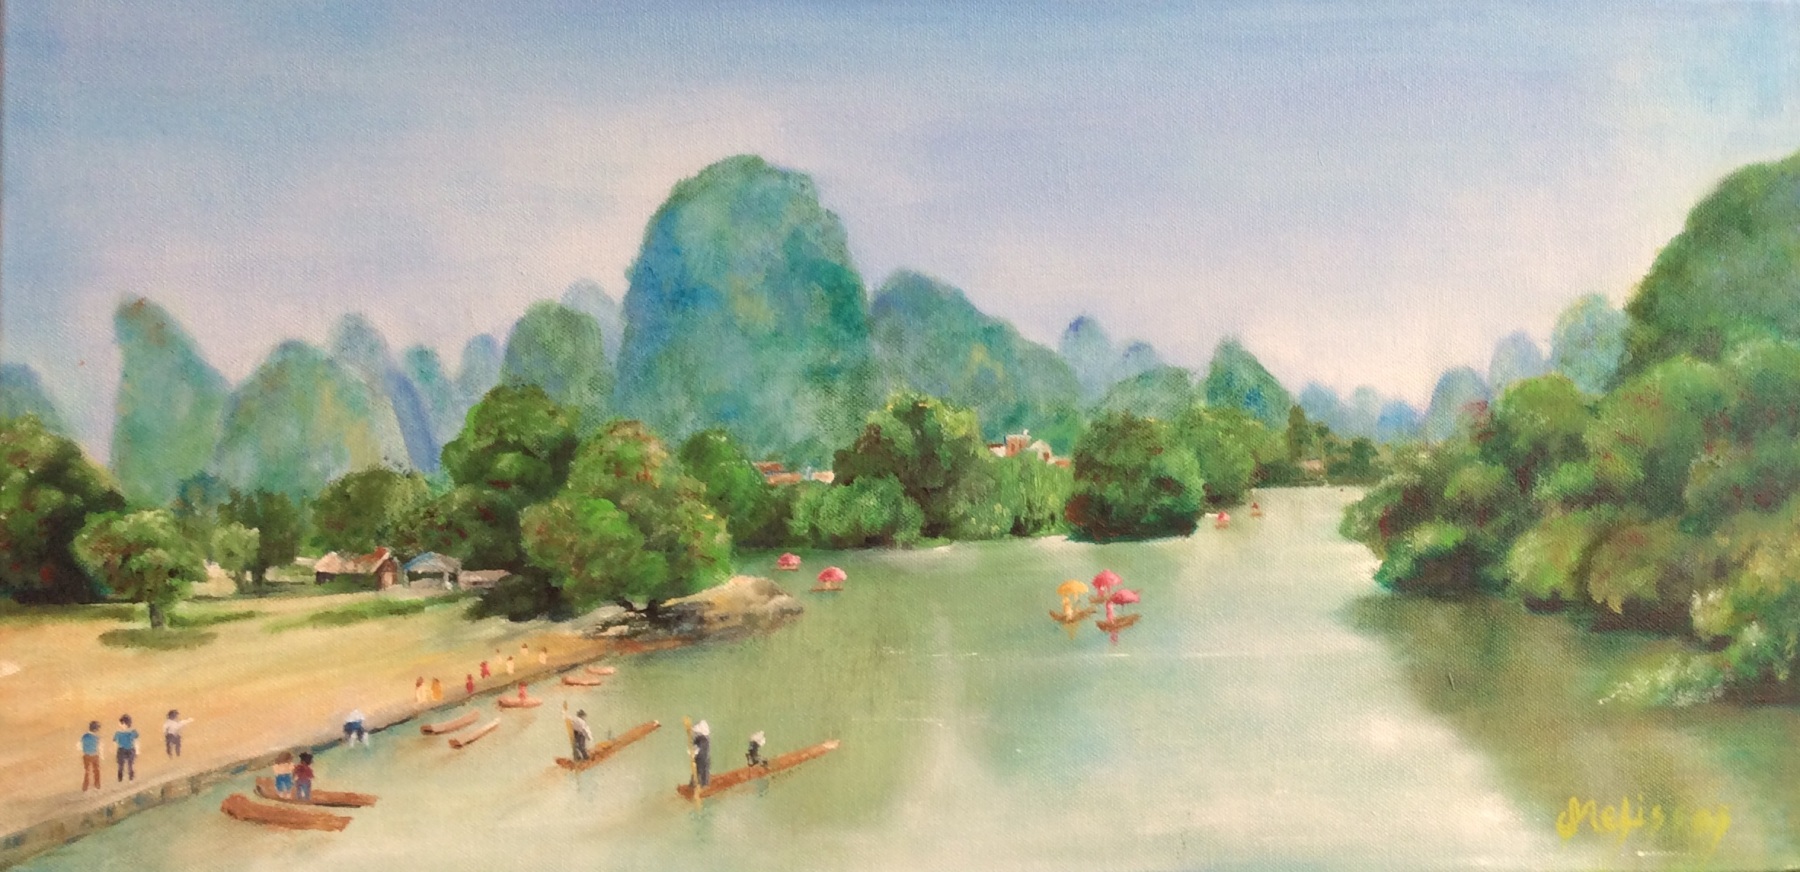 Yulong River, Guilin, China -  Shirley Melissas